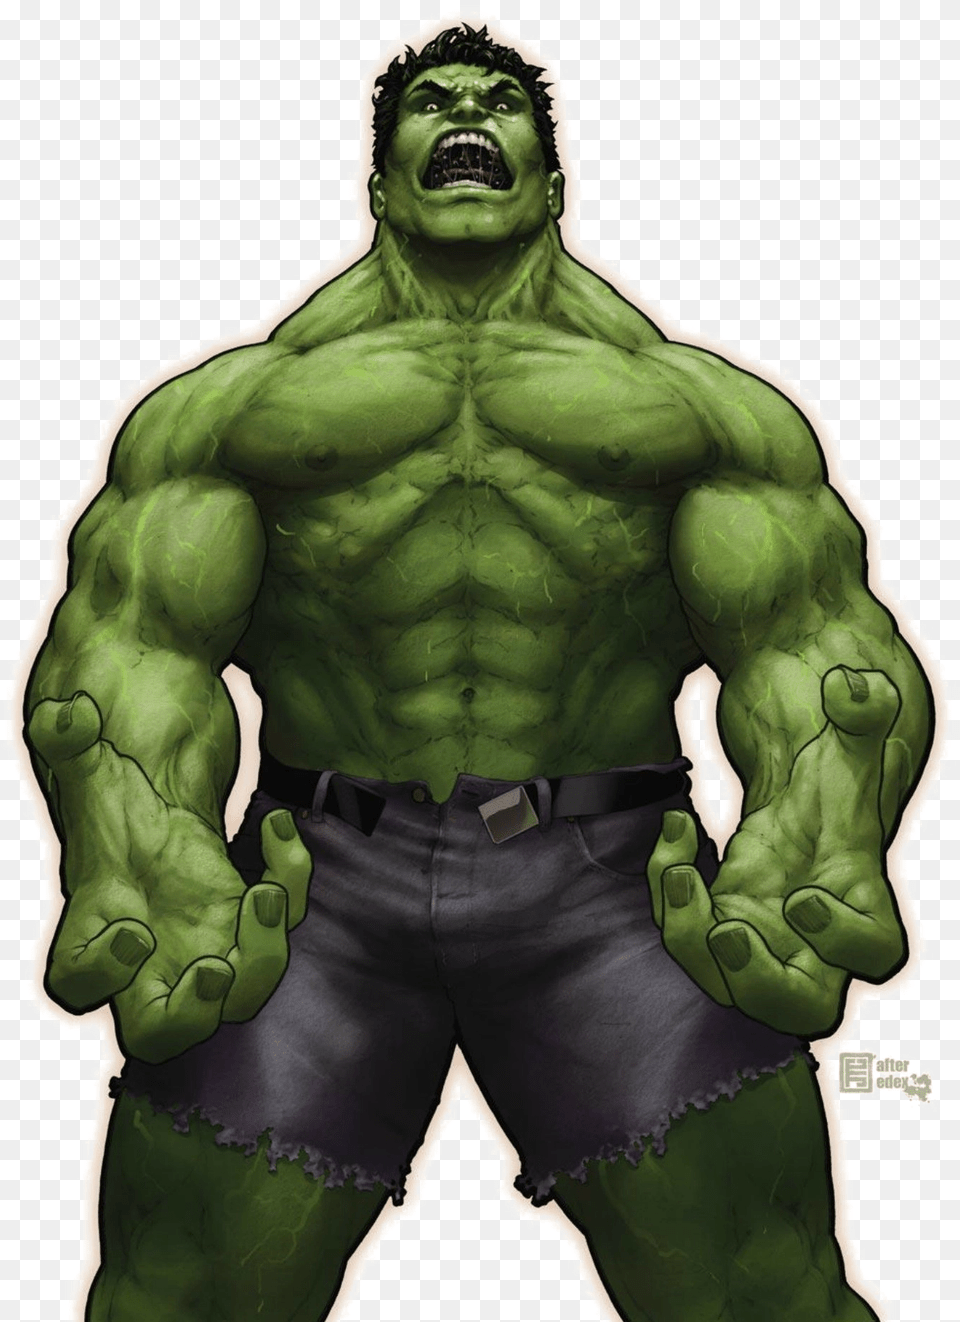 Hulk Image Hulk Penis, Adult, Male, Man, Person Free Png Download